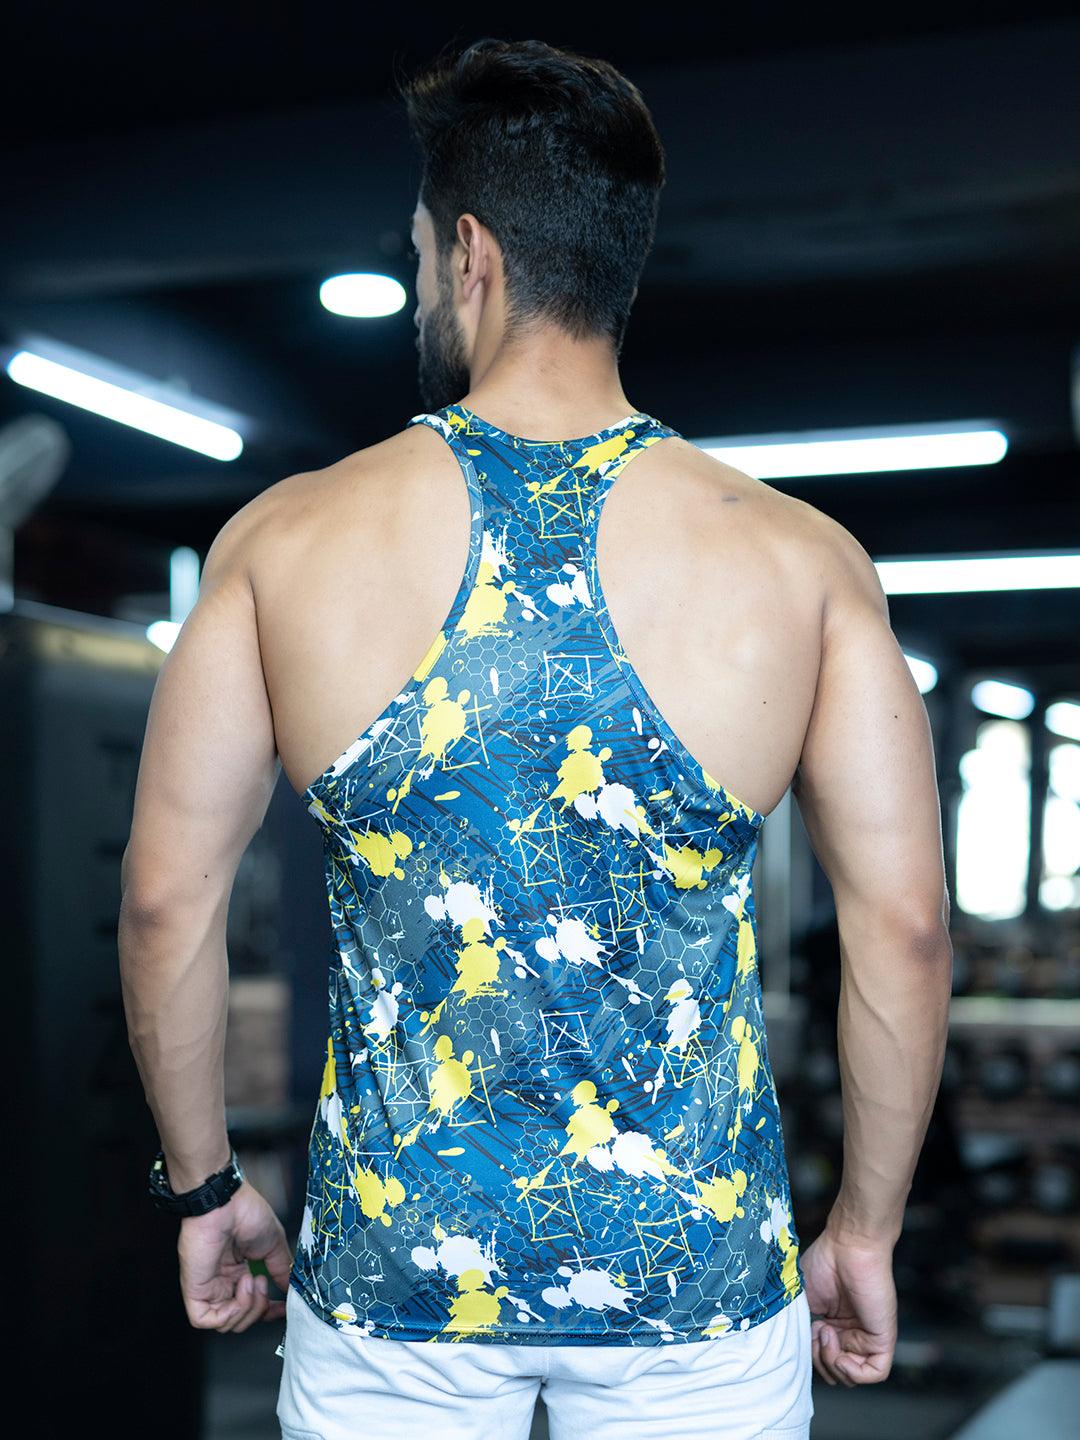 Buy Men's Gym T-back stringer Sleeveless Sports Vest Online